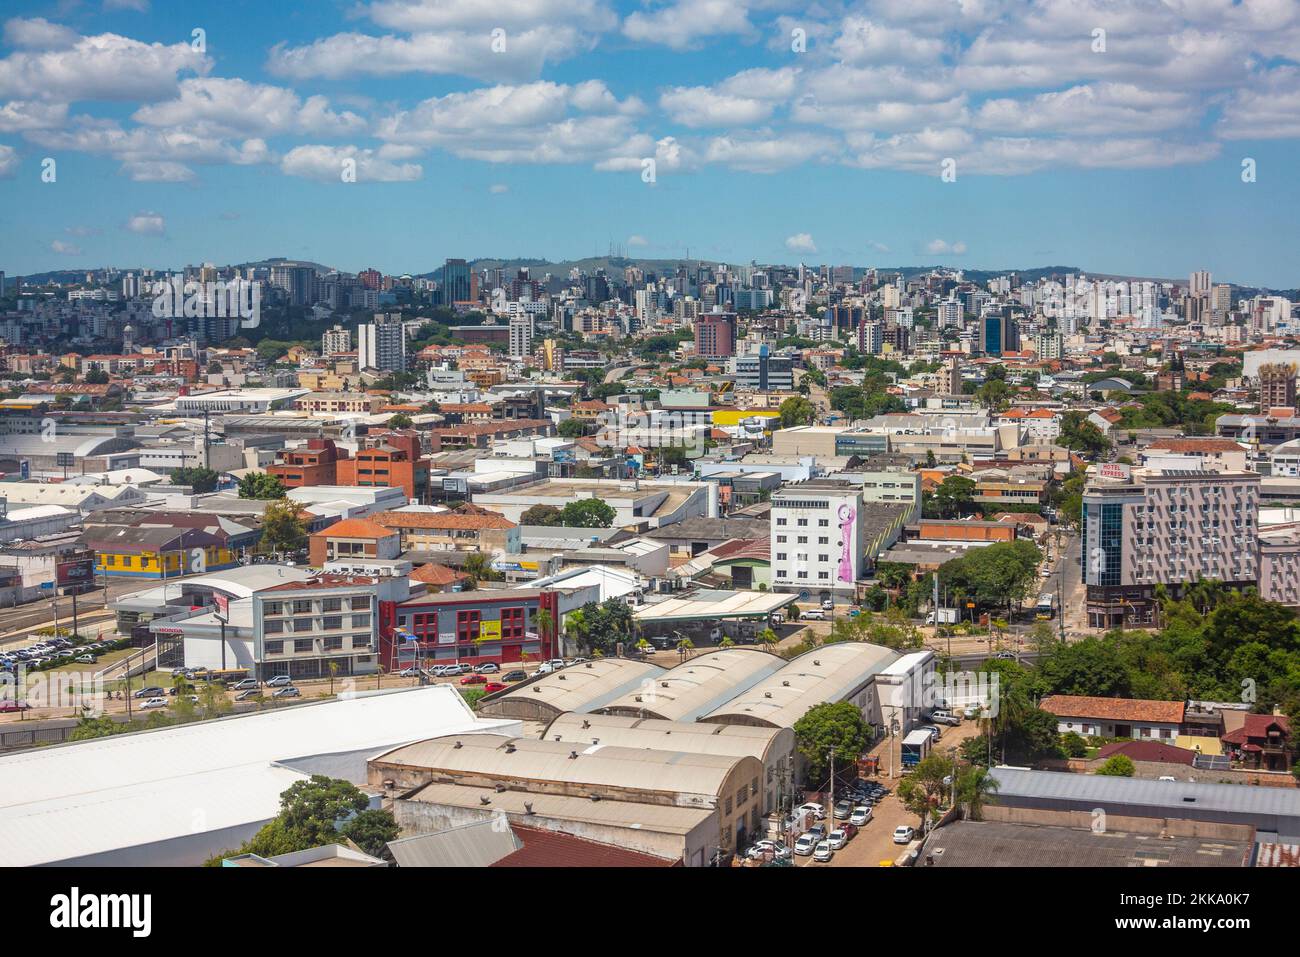 Porto Alegre, Brazil - February 16, 2018: scenic aerial view of Porto Alegre in Brazil. Stock Photo